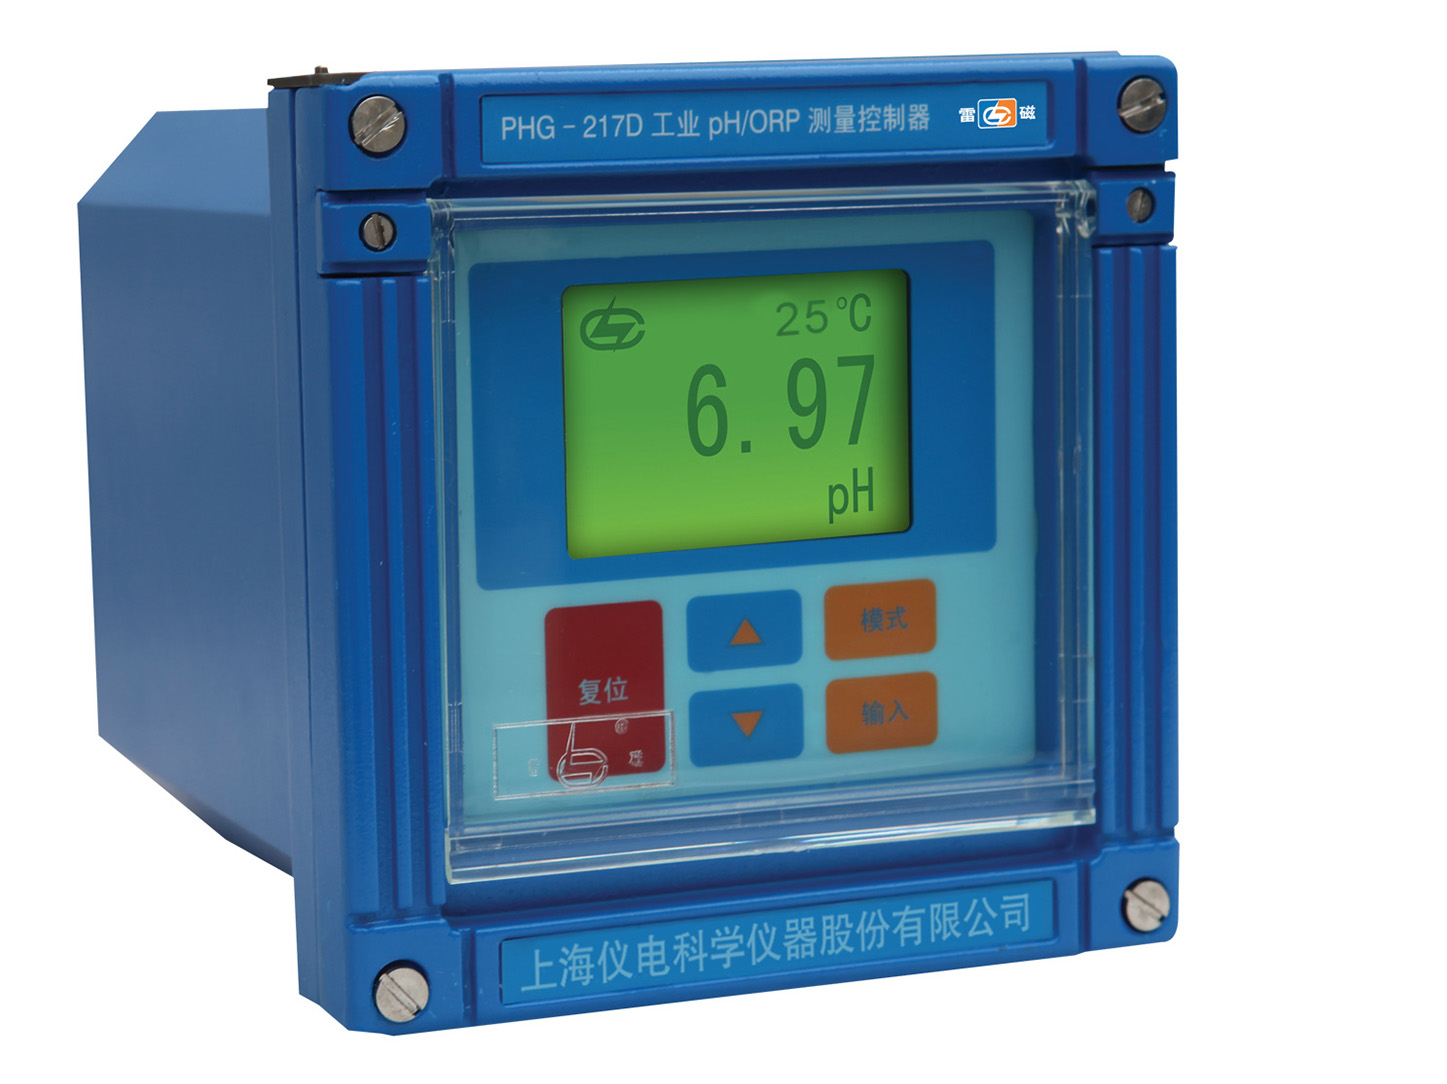 雷磁工业pH/ORP测量控制器PHG-217C/ PHG-217D型